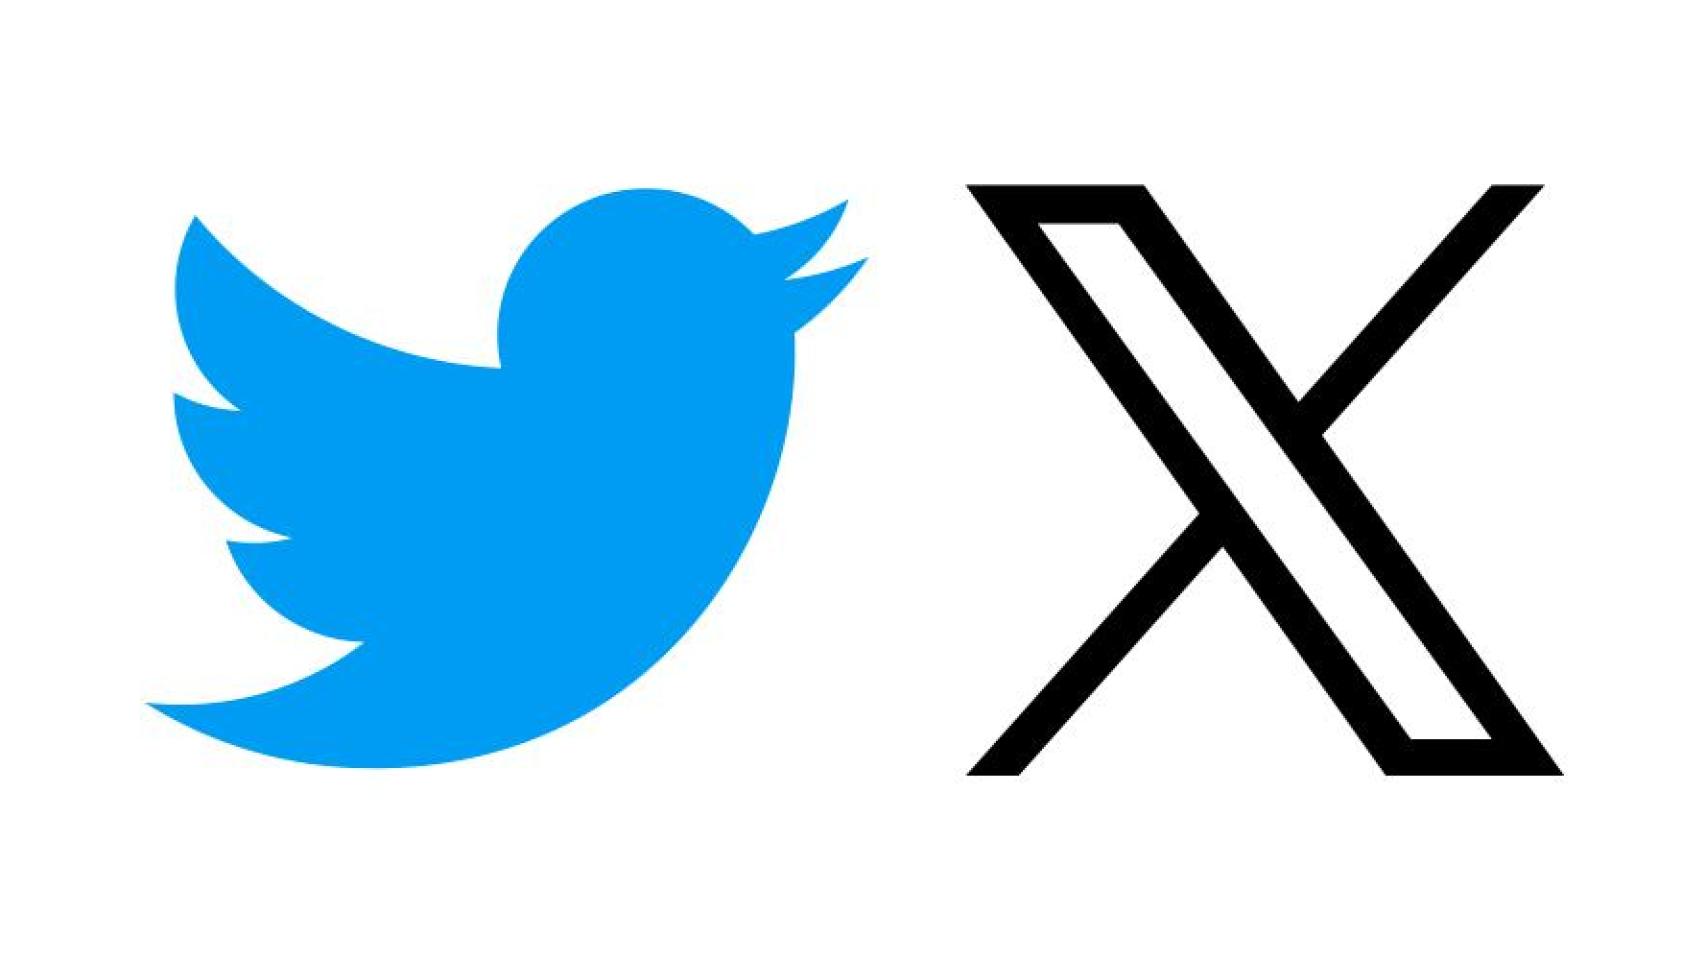 Logotipo antiguo de Twitter y nuevo logotipo de X